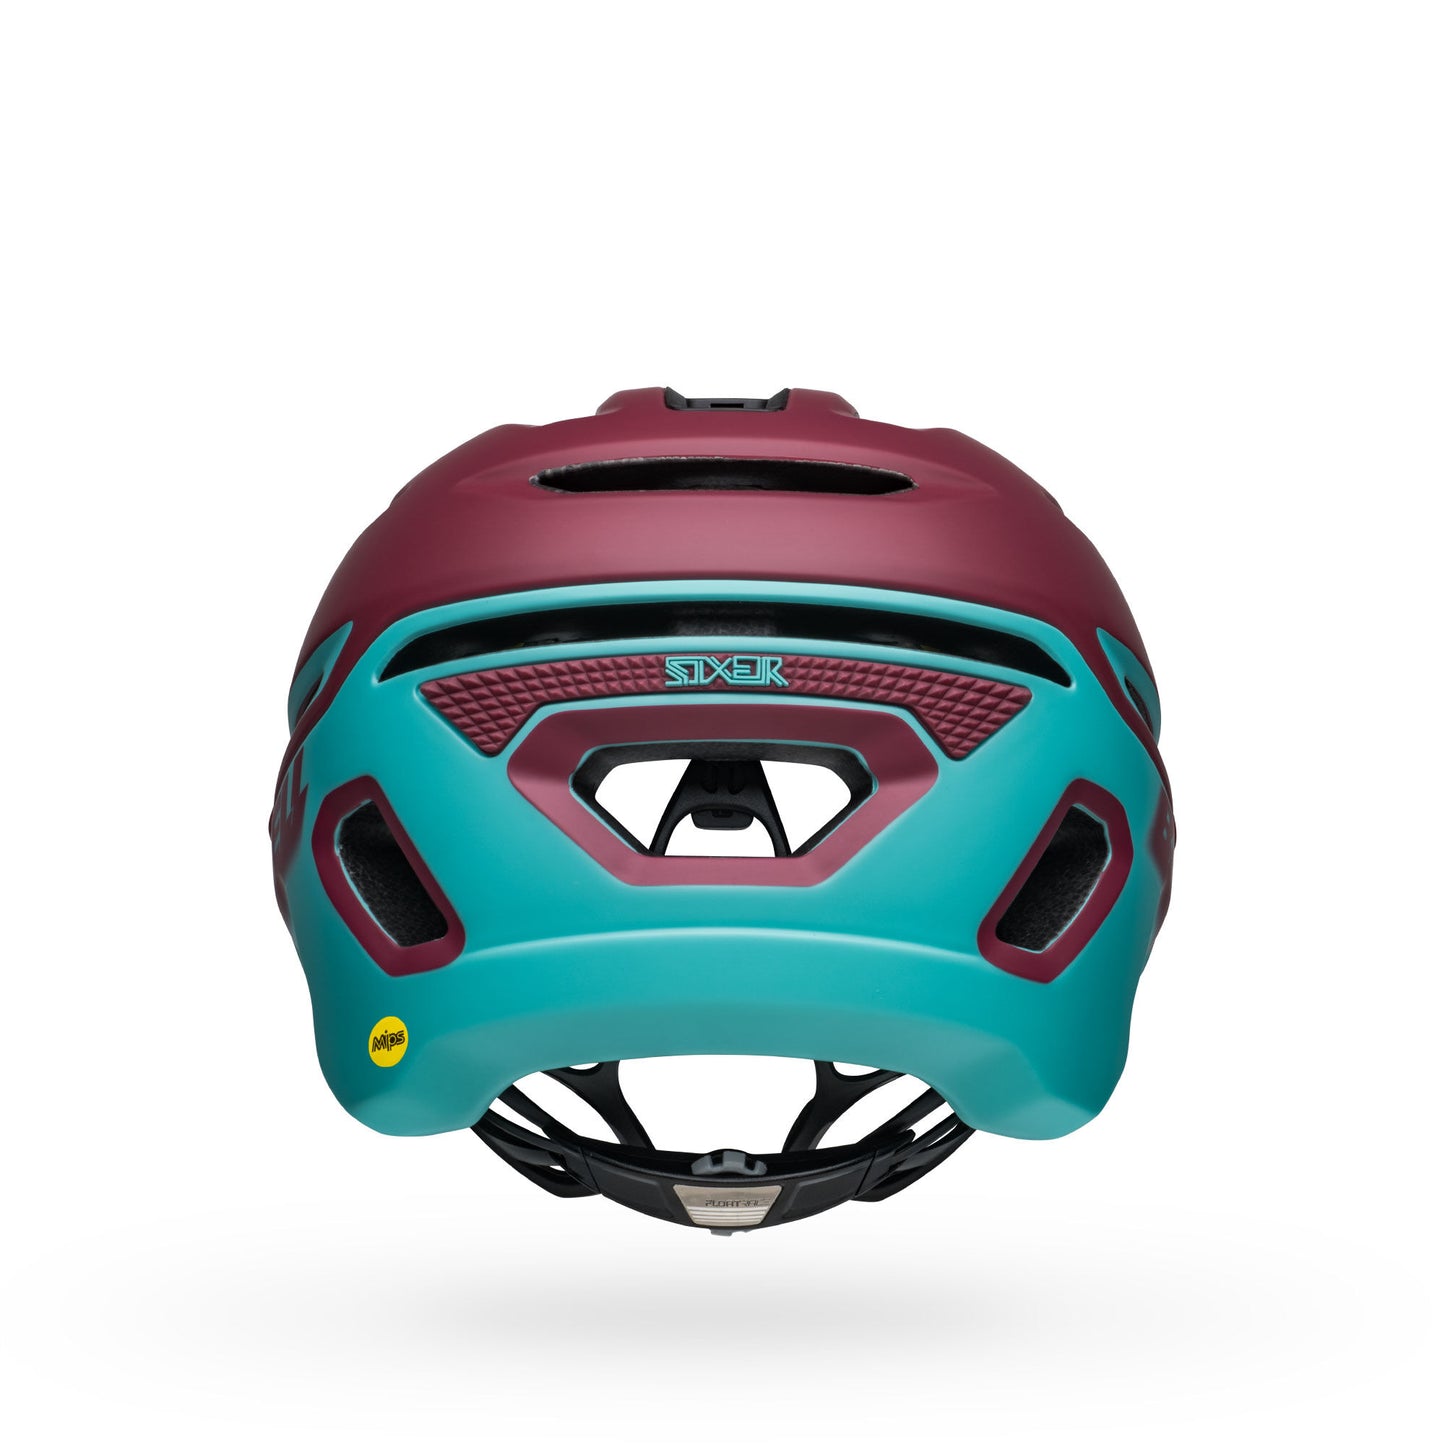 Bell Sixer MIPS Helmet Matte Brick Red/Ocean Bike Helmets